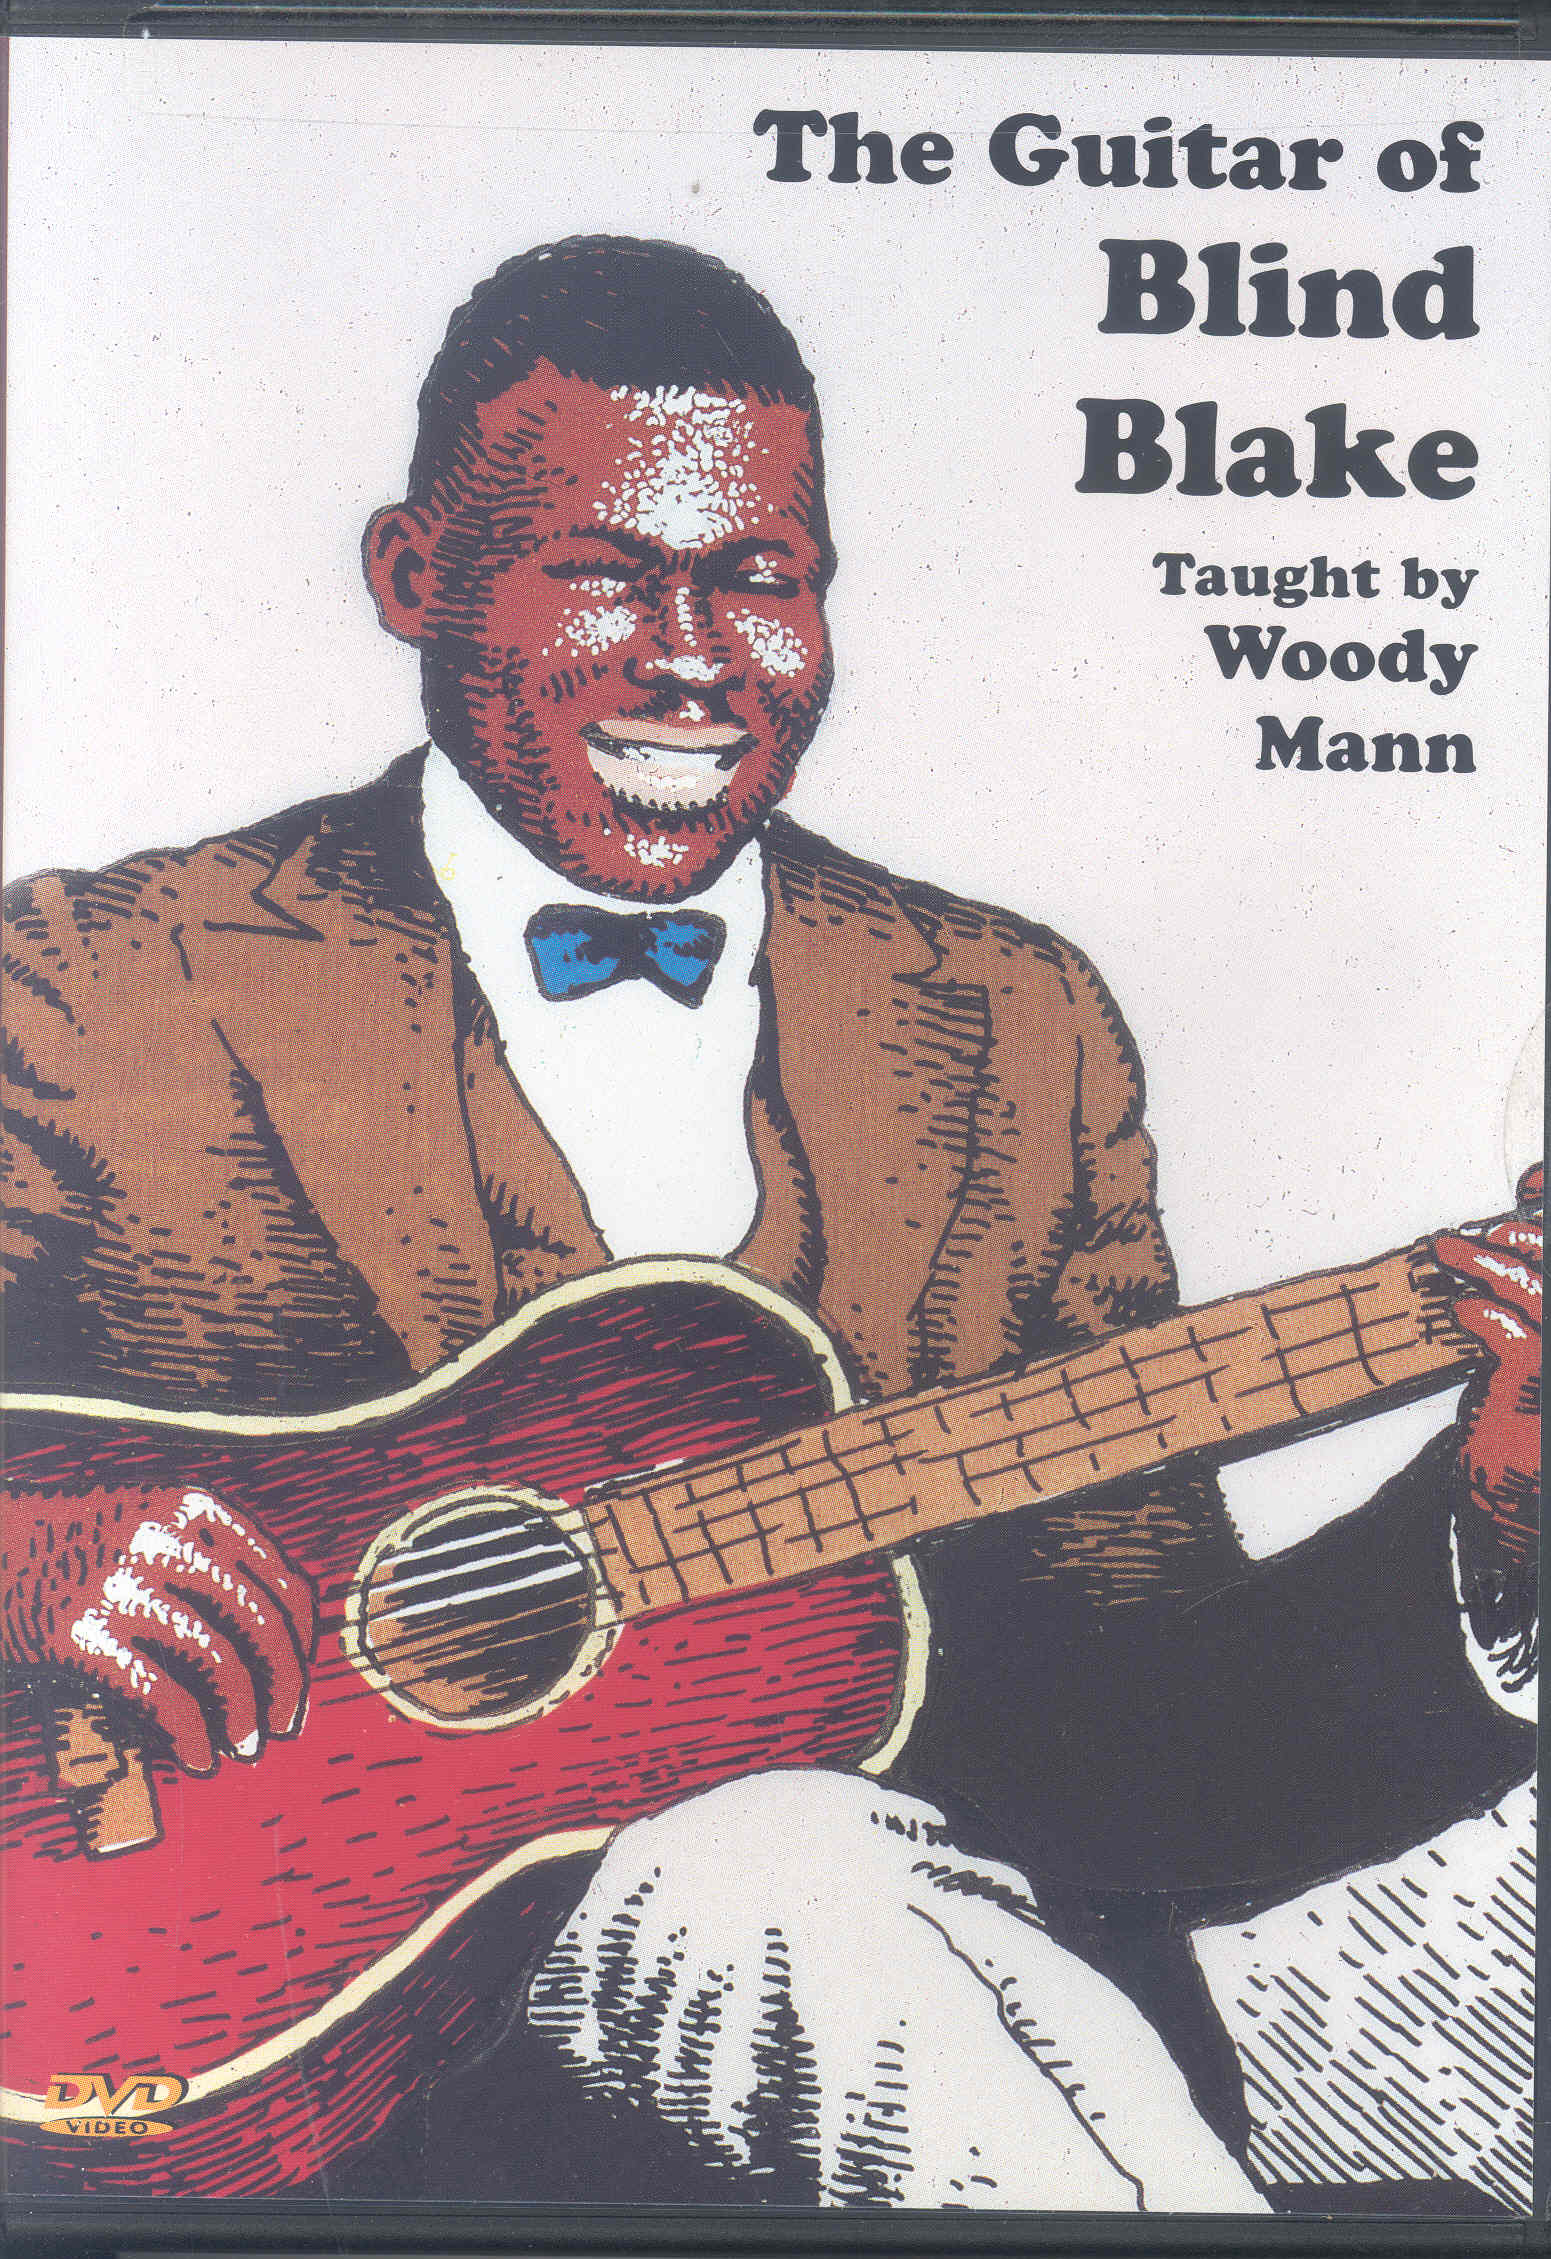 Blind Blake Guitar Of Dvd Sheet Music Songbook